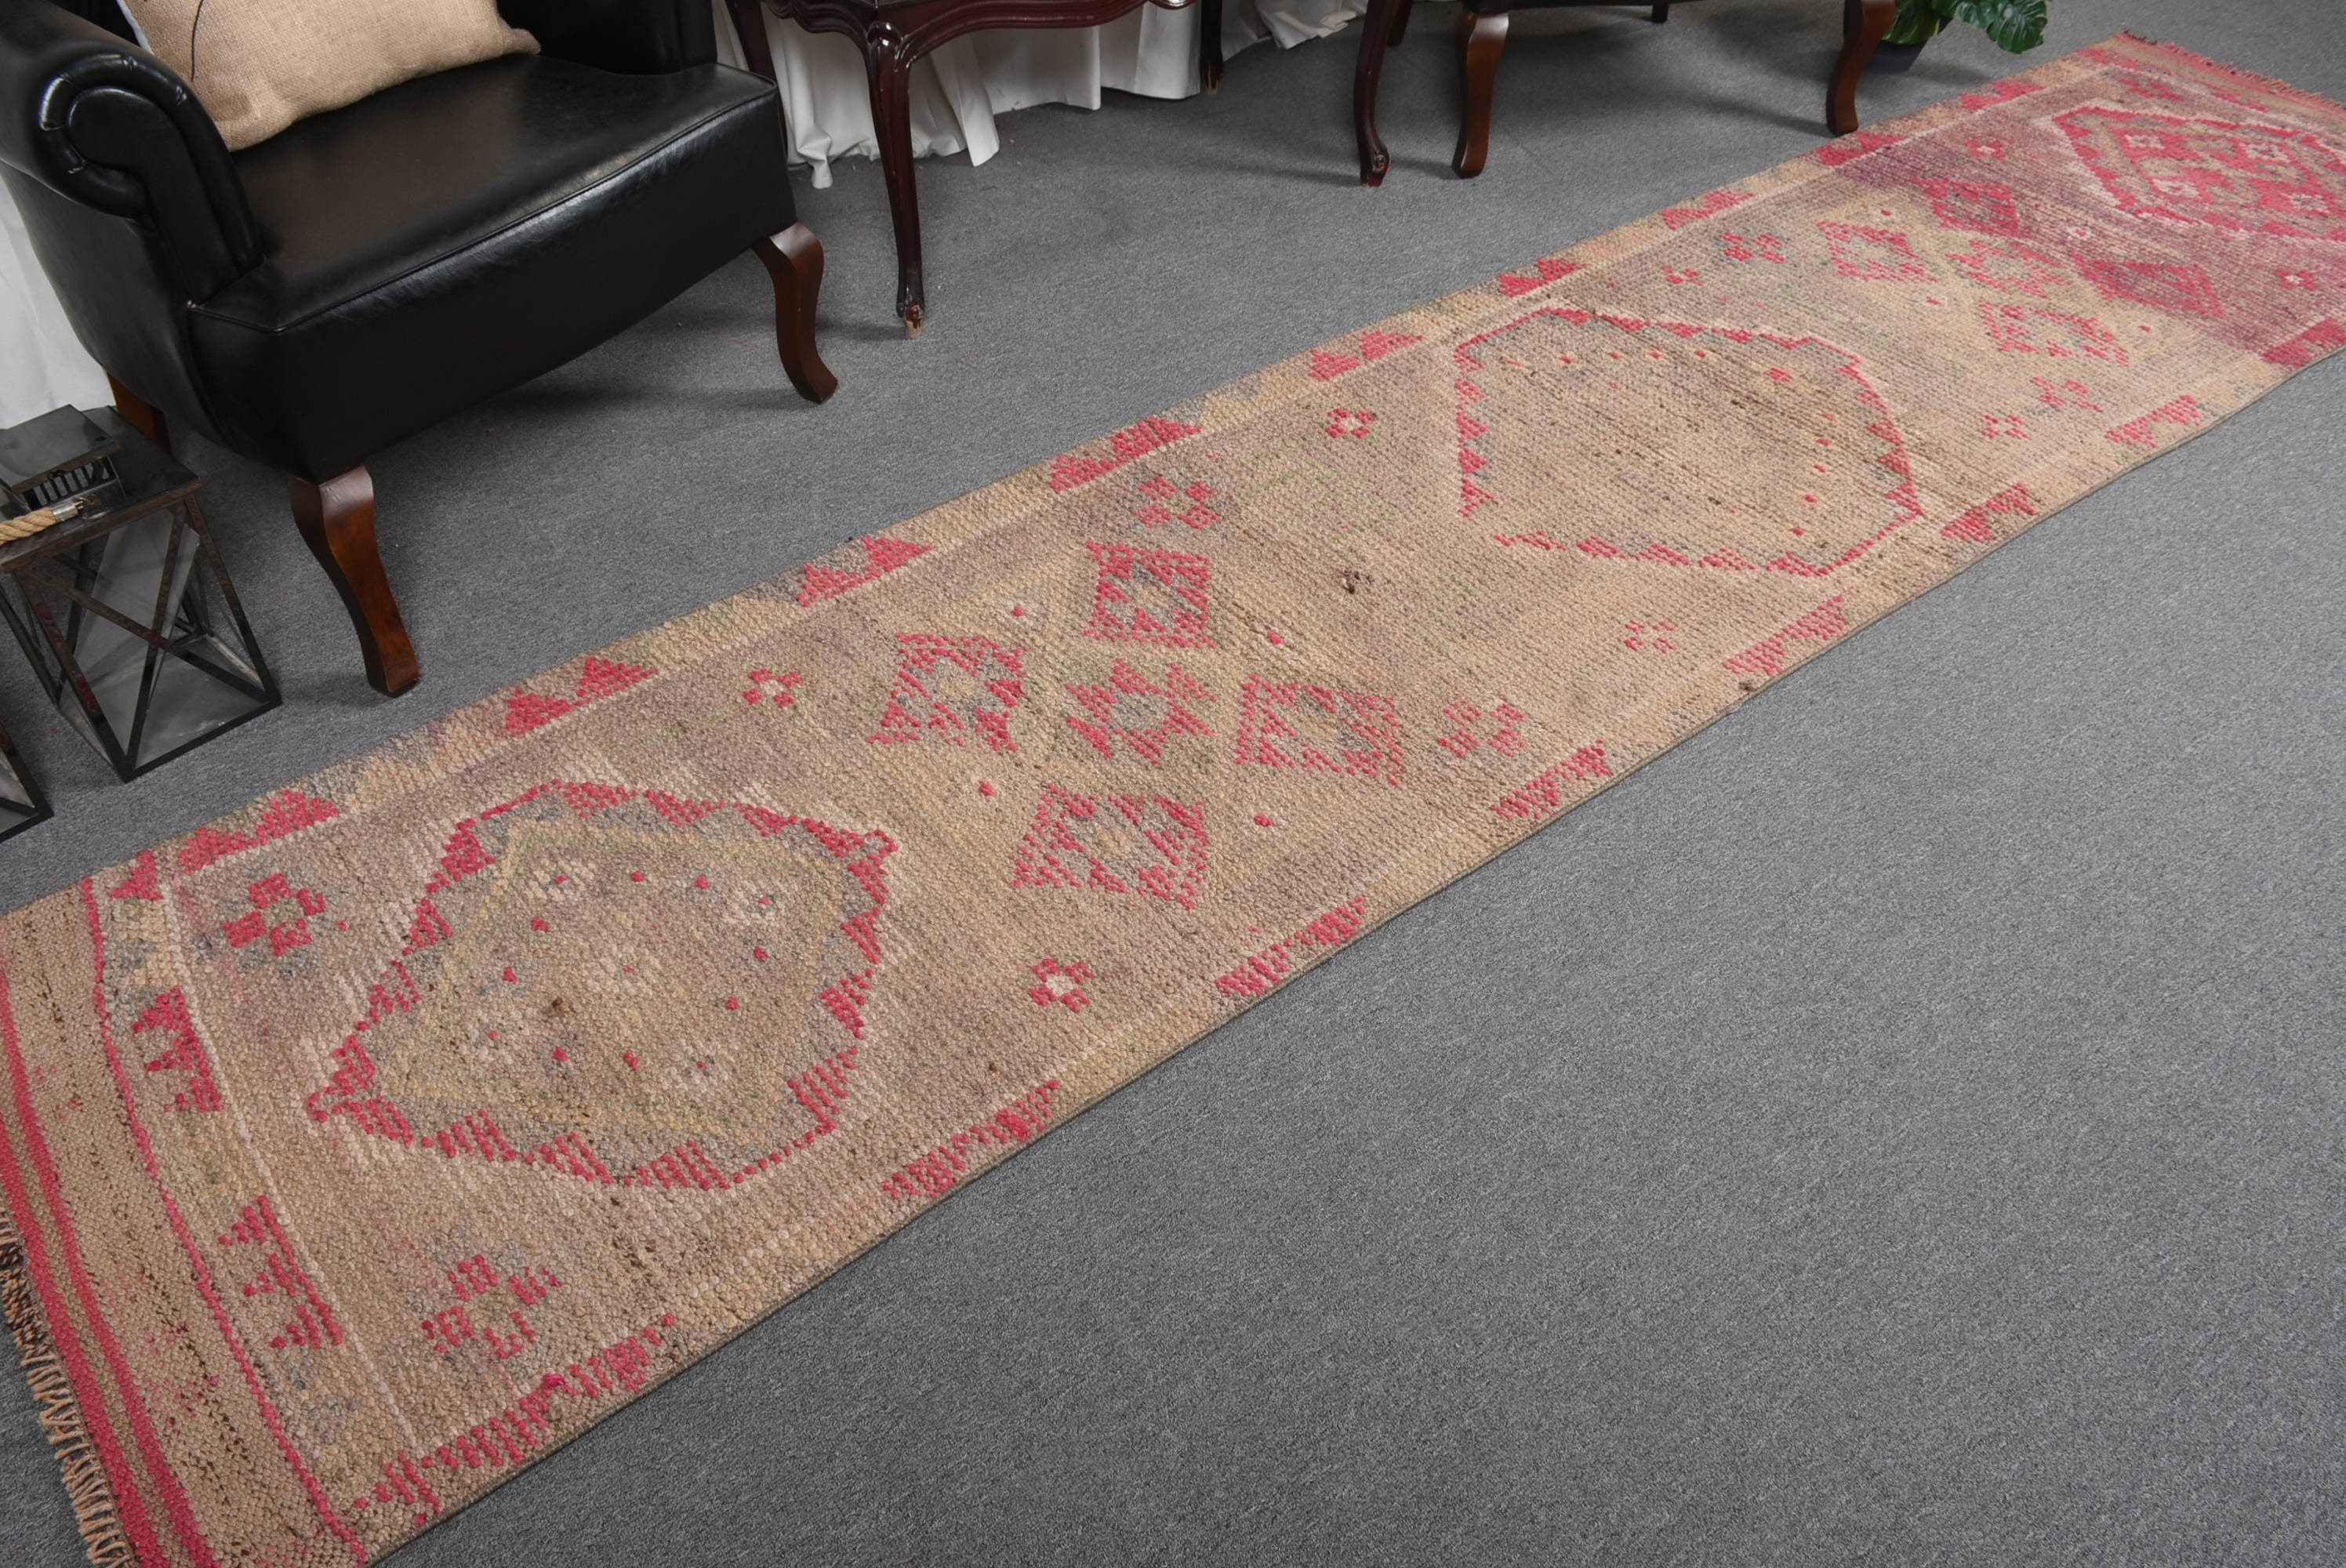 Oriental Rug, Turkish Rug, Stair Rug, Kitchen Rug, Rugs for Hallway, Antique Rug, Beige Wool Rug, Vintage Rugs, 2.7x12.1 ft Runner Rug